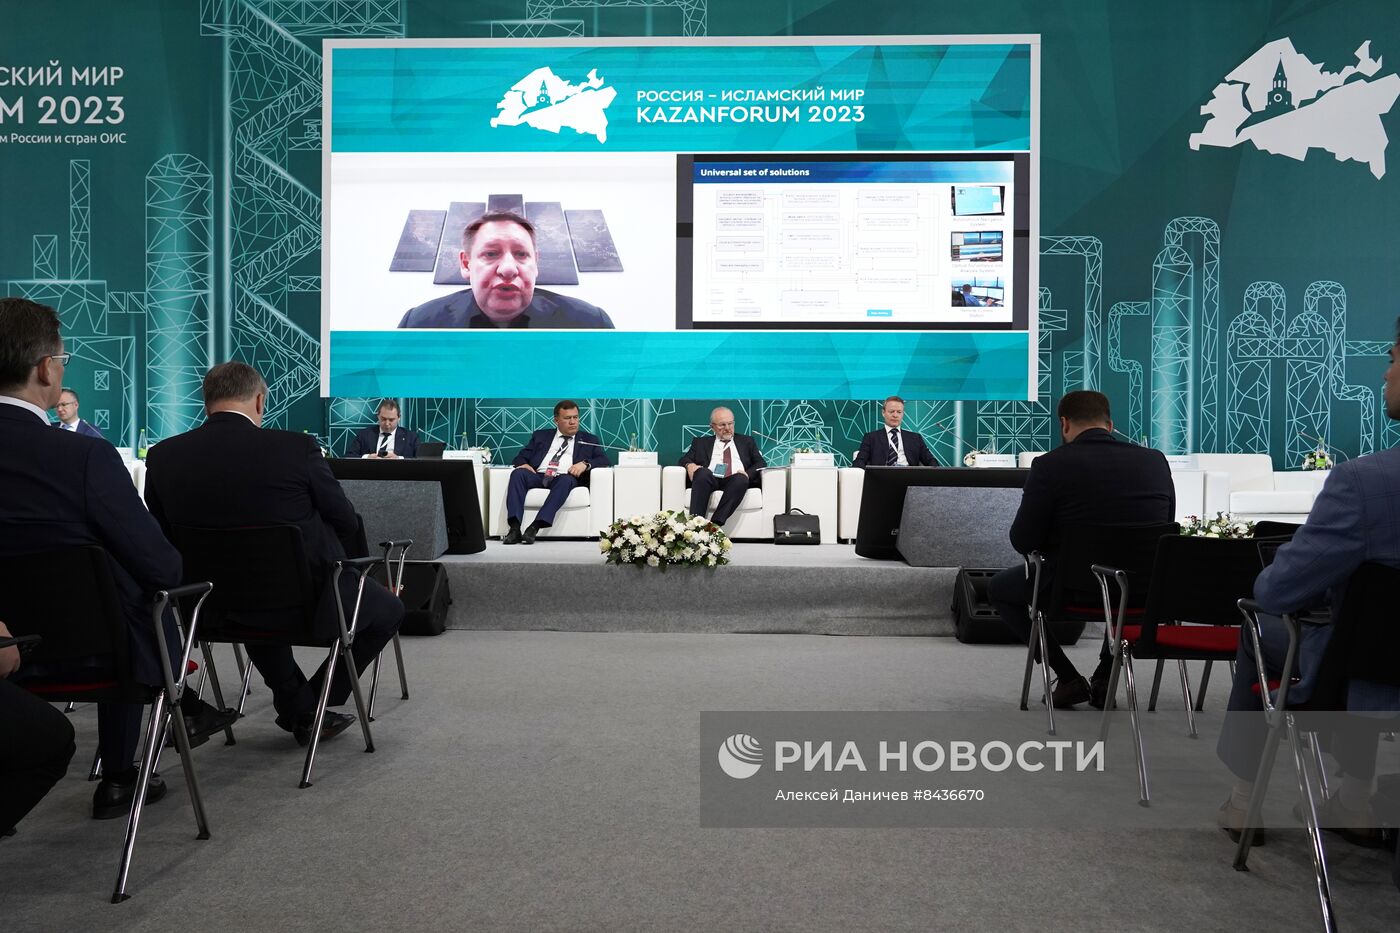 KAZANFORUM 2023.  Россия - Исламский мир: сотрудничество в области судостроения